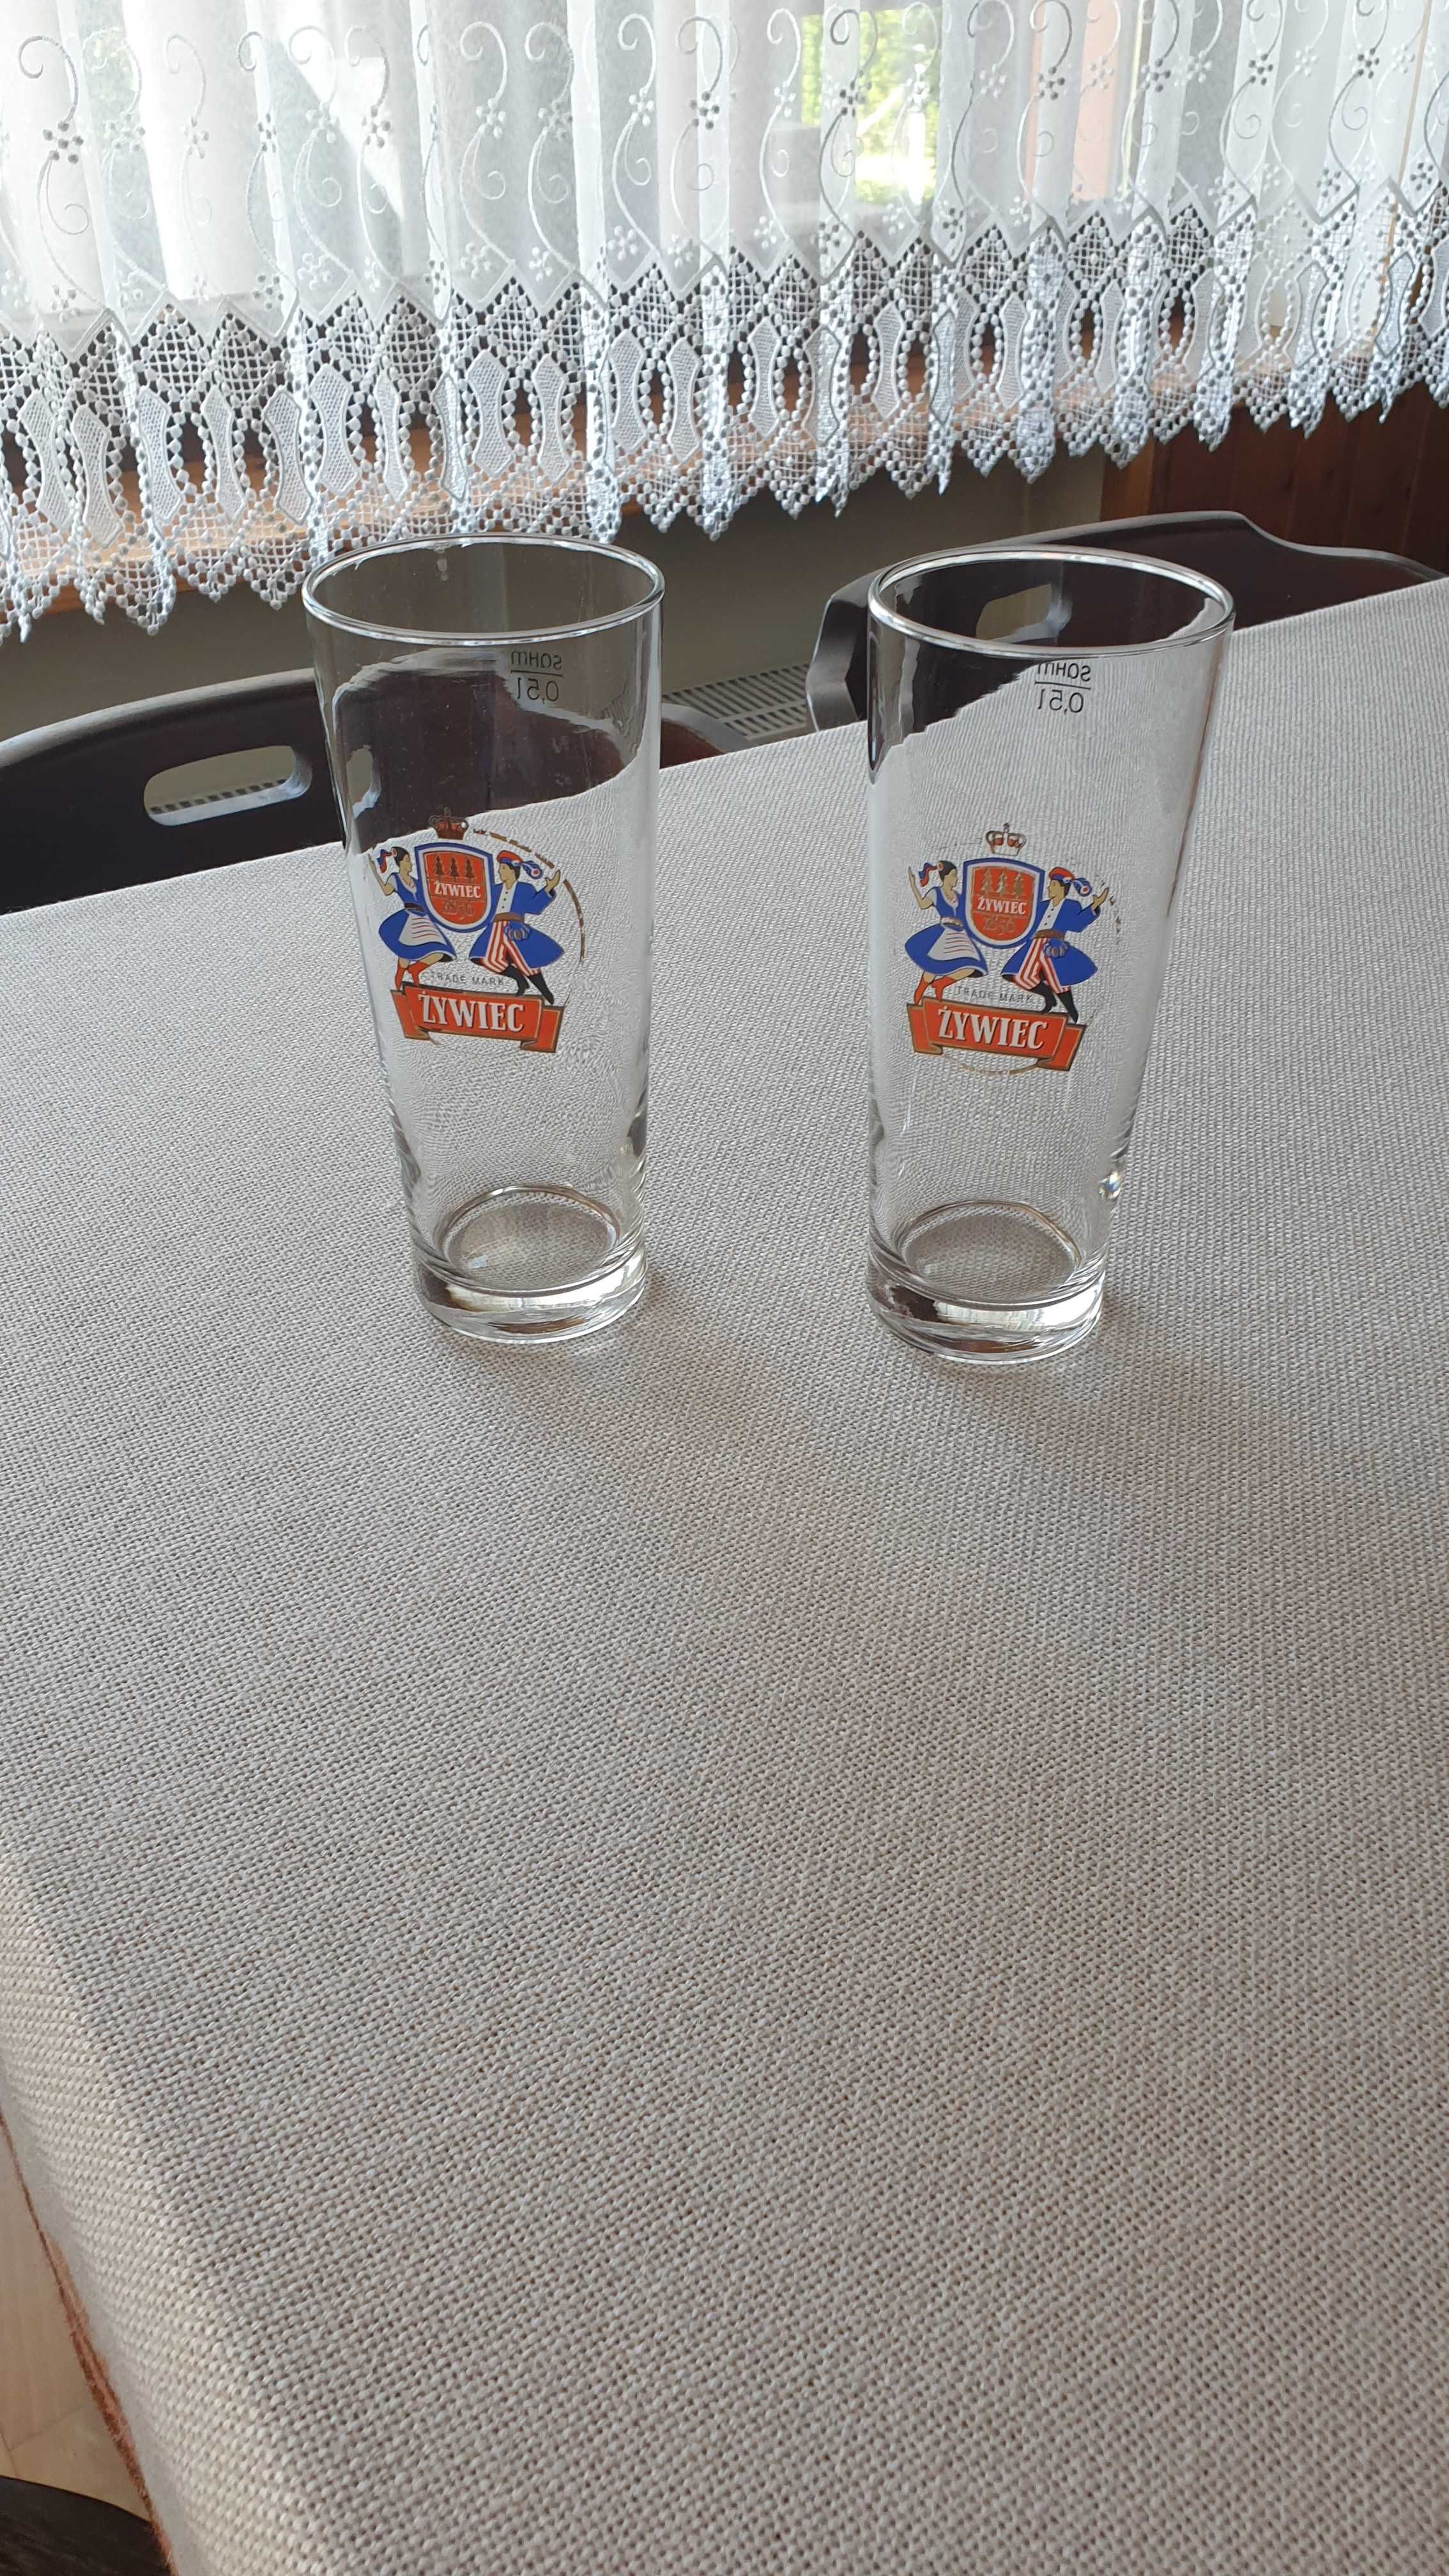 Dwie szklanki do piwa 0,5l, z logo Żywiec